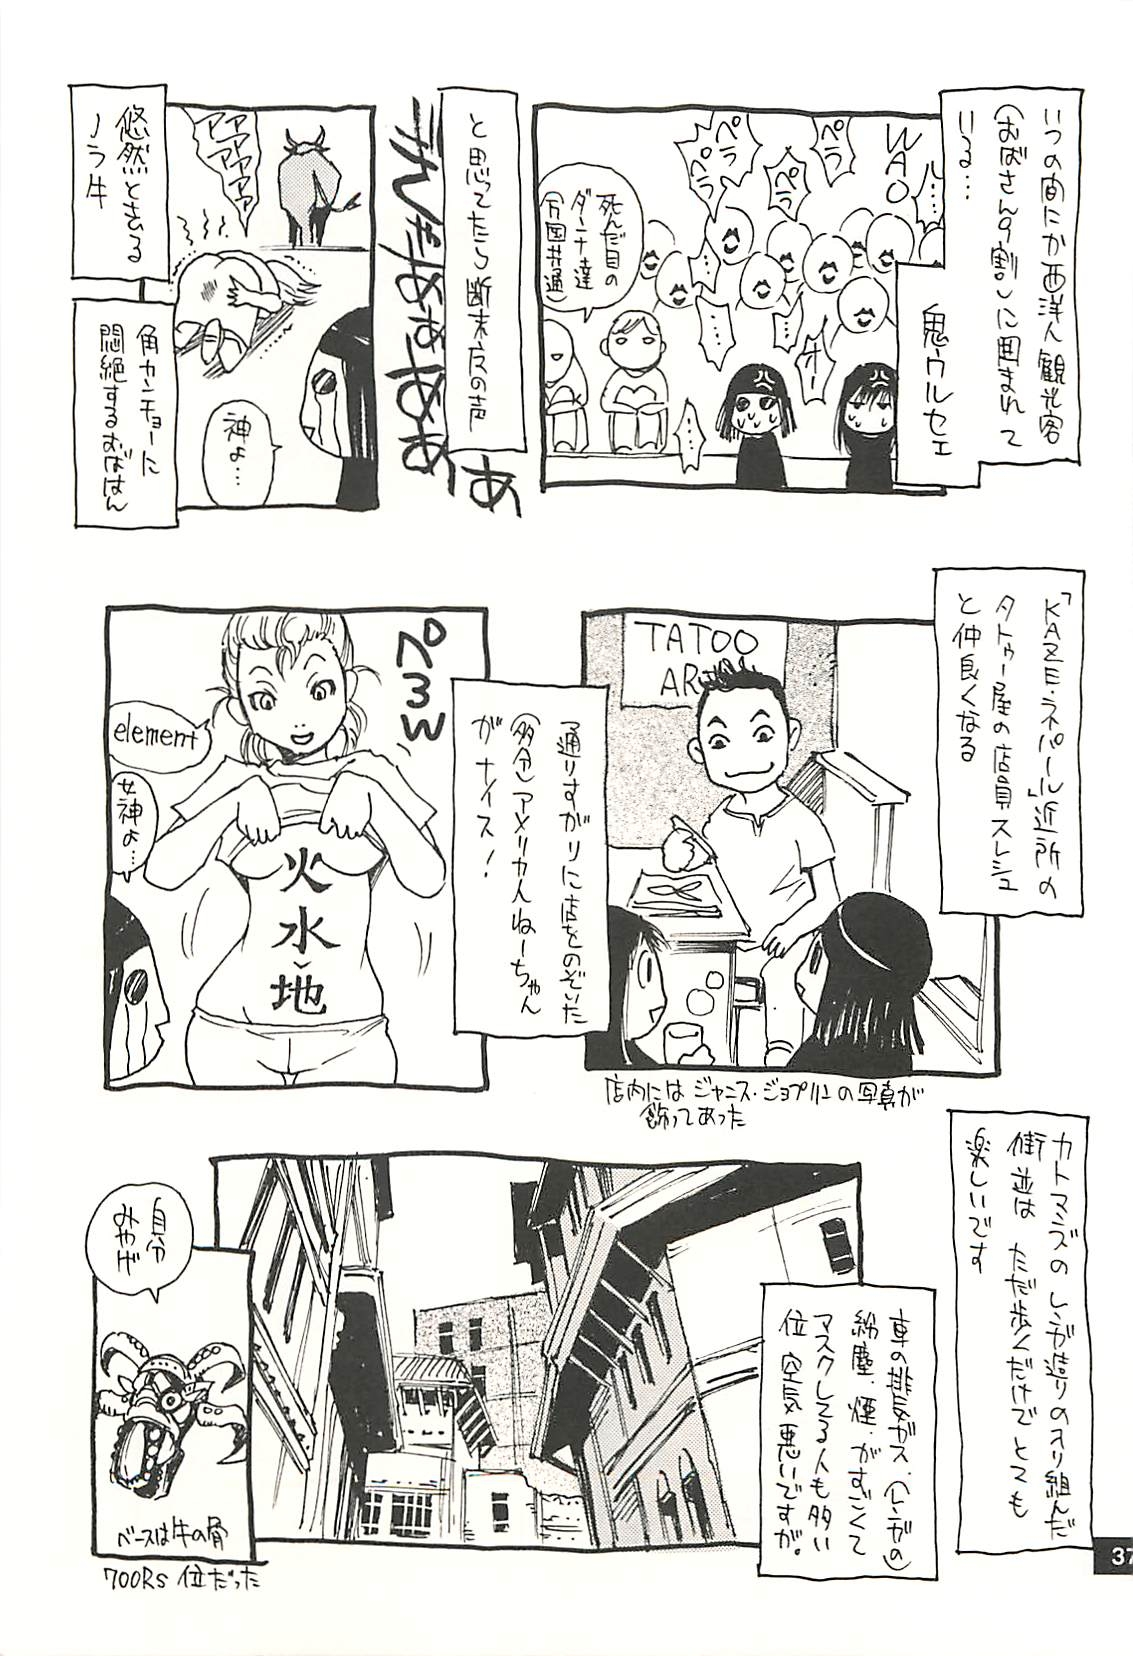 [NOUZUI MAJUTSU, NO-NO'S (Kawara Keisuke, Kanesada Keishi)] Nouzui Kawaraban Hinichijoutekina Nichijou NEPAL-hen 35